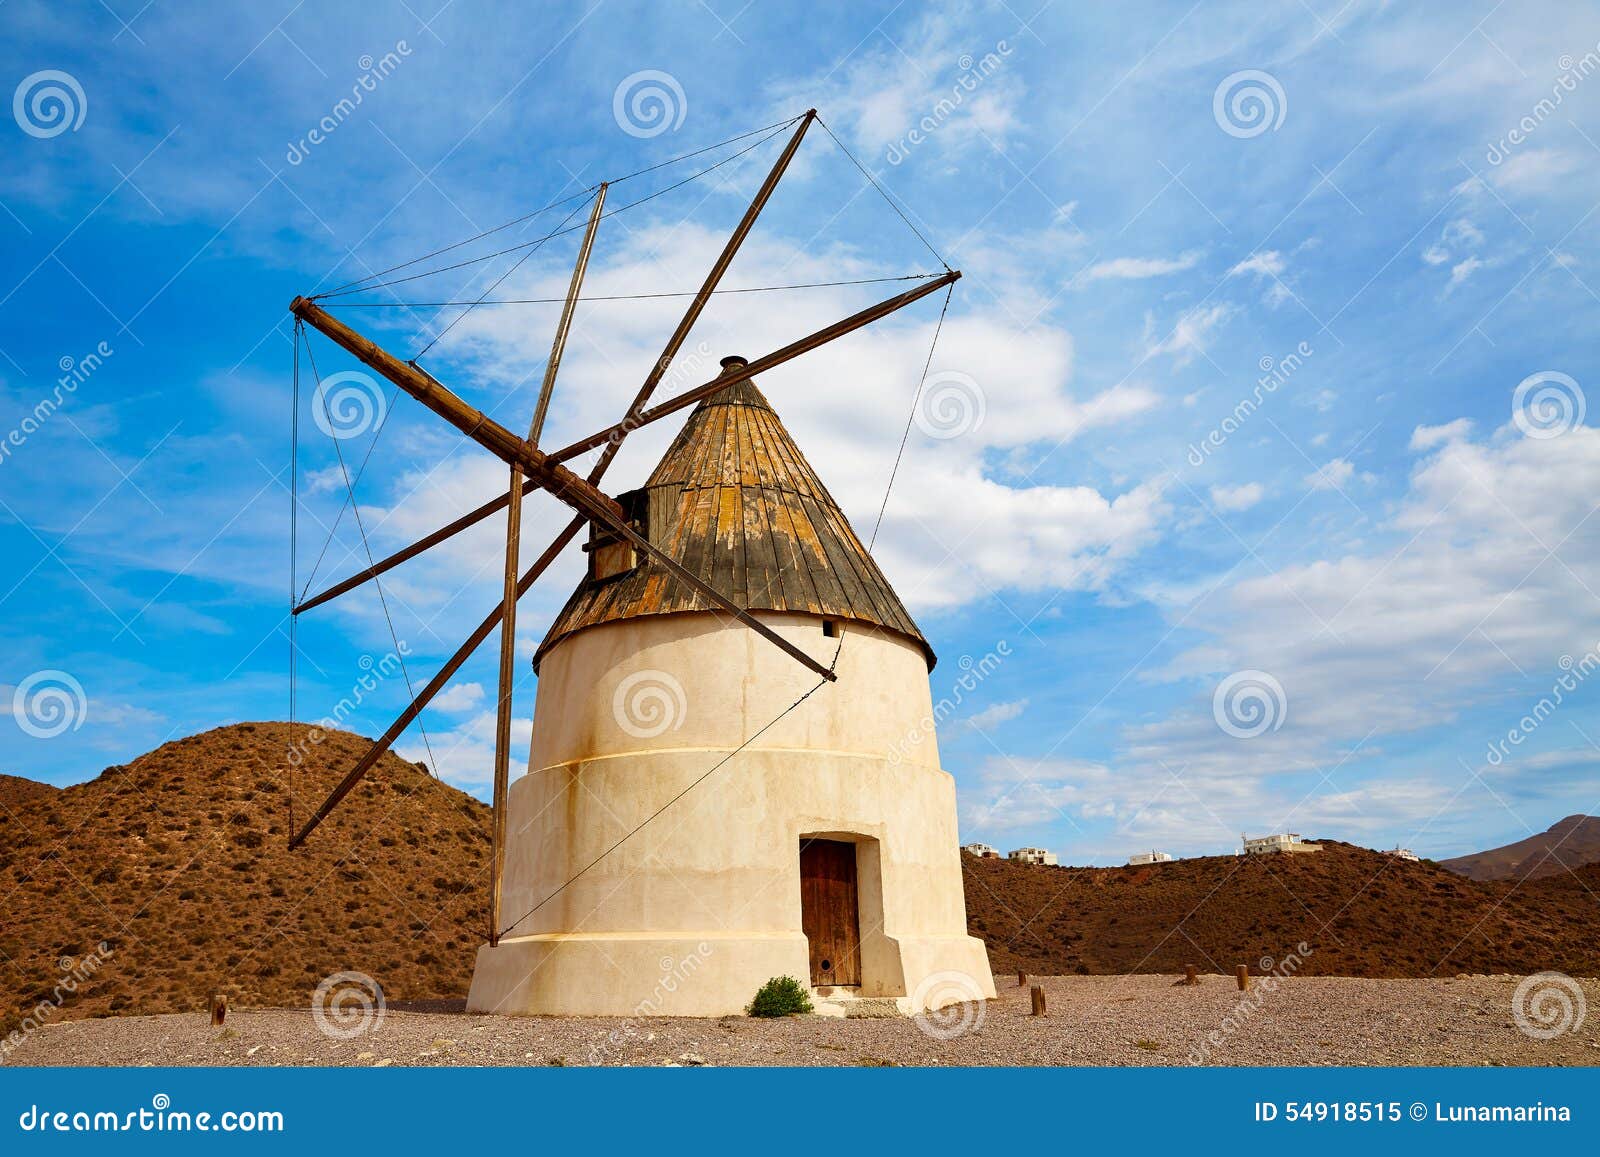 almeria molino de los genoveses windmill spain